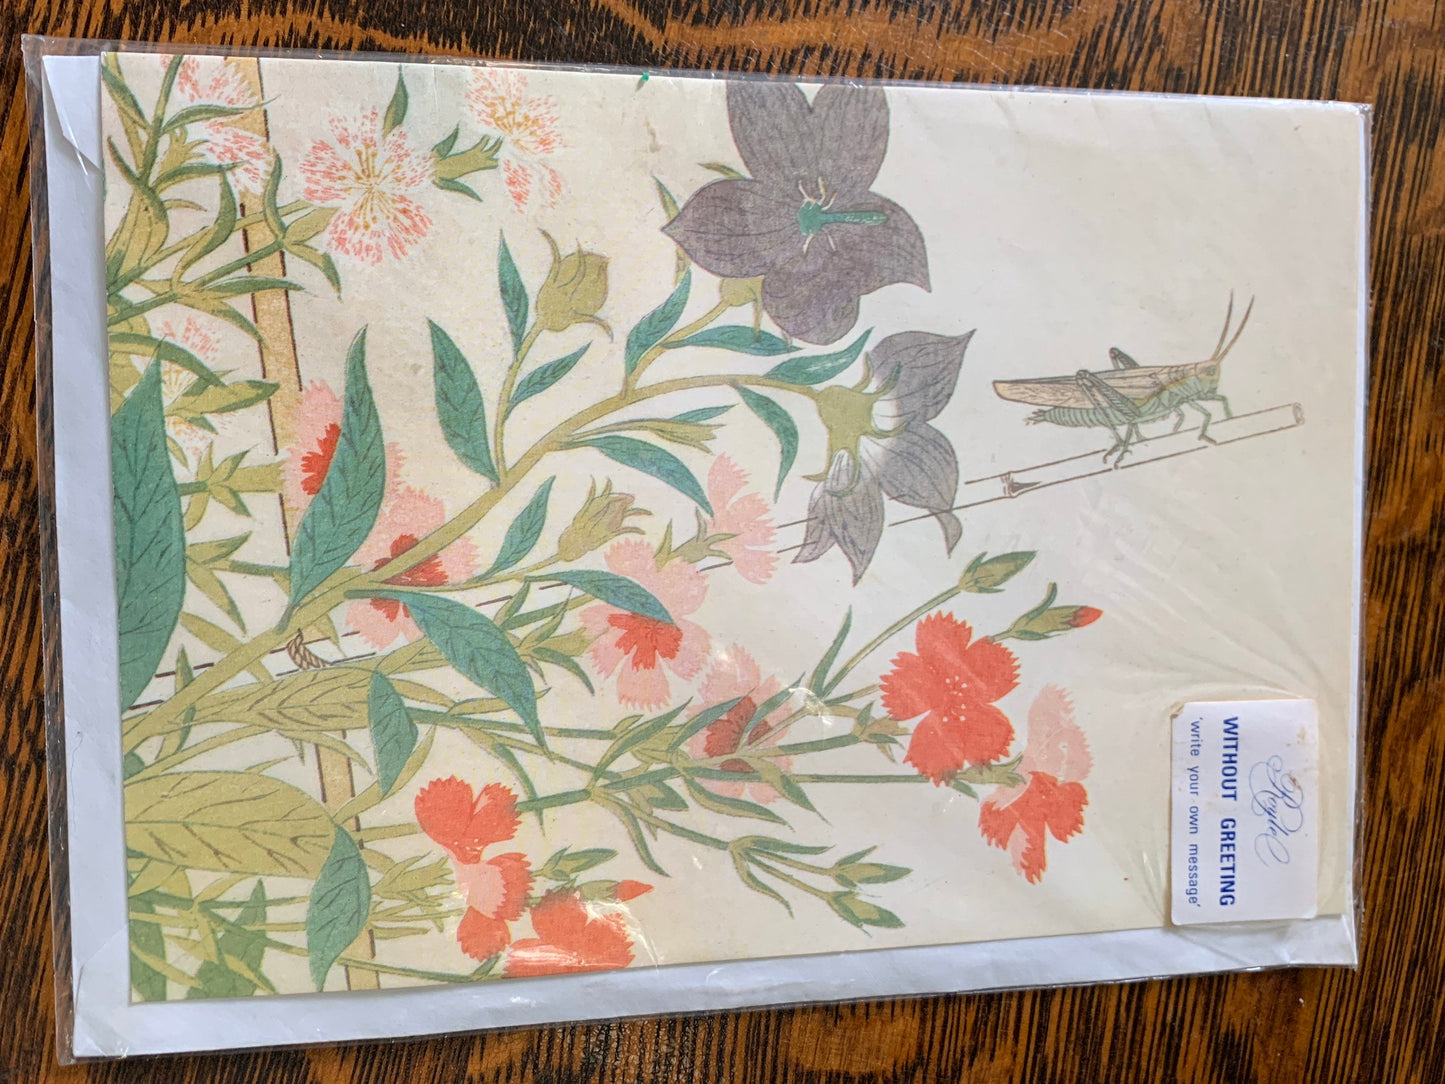 Vintage Greeting Card British Museum Gift Shop Card Balloon Flower, Platycodon, Ehon Mushi Erabi Kitawaga Utamaro